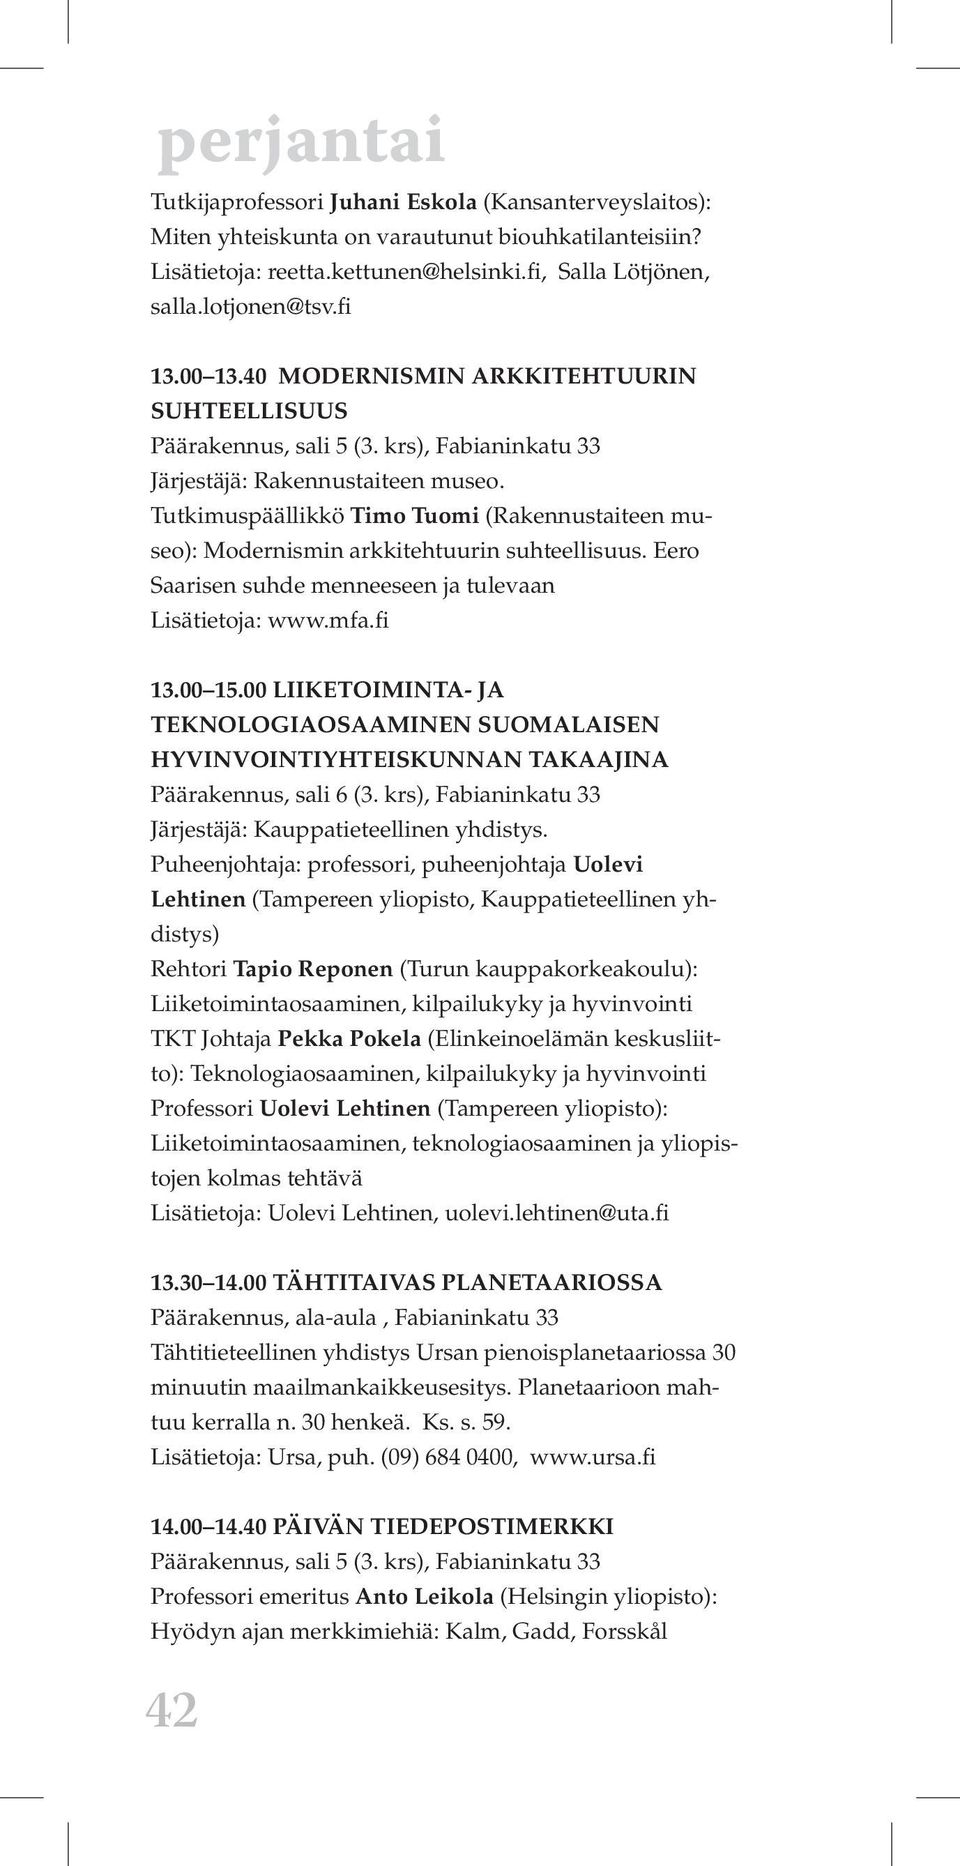 Eero Saarisen suhde menneeseen ja tulevaan Lisätietoja: www.mfa.fi 13.00 15.00 LIIKETOIMINTA- JA TEKNOLOGIAOSAAMINEN SUOMALAISEN HYVINVOINTIYHTEISKUNNAN TAKAAJINA Päärakennus, sali 6 (3.